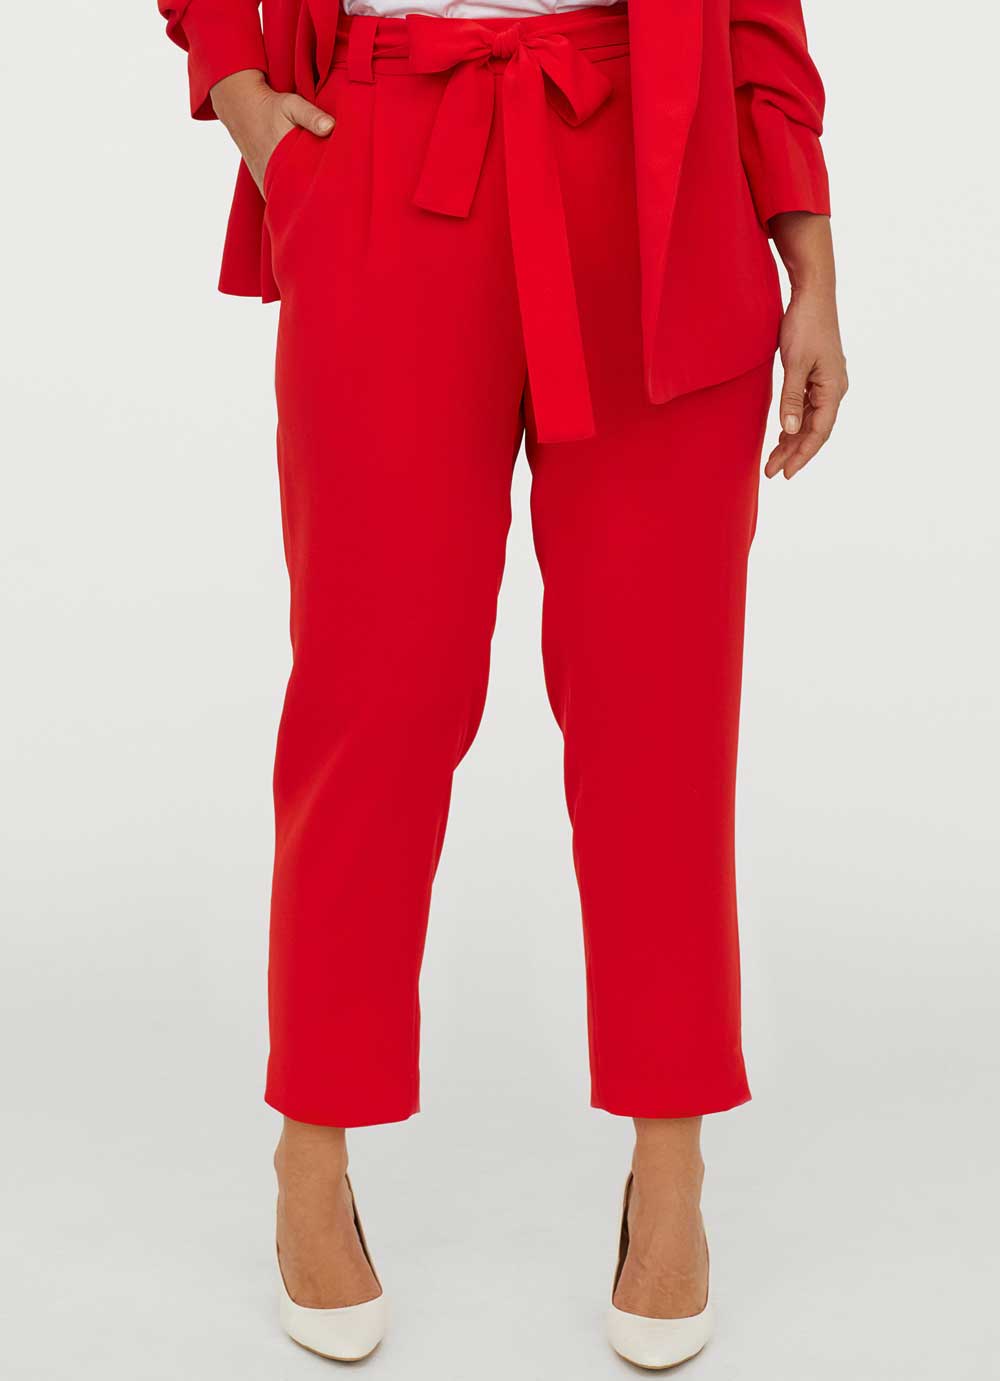 H&M pantaloni estate 2020